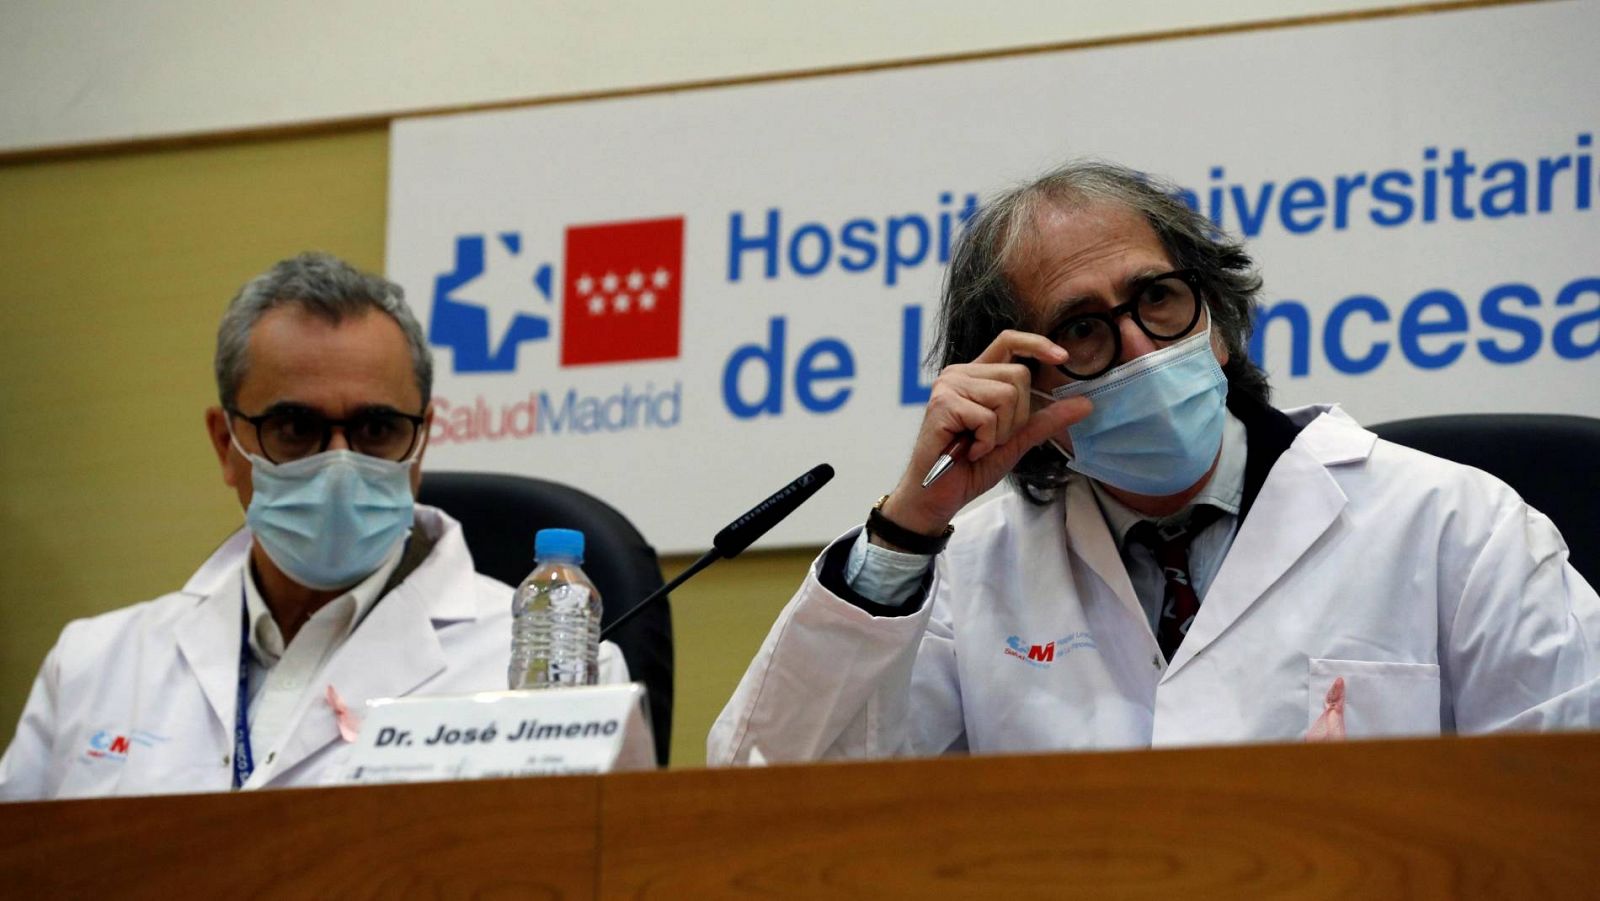 Los médicos Vicente Estrada y José Jimeno, en la presentación de los resultados preliminares del Aplidin